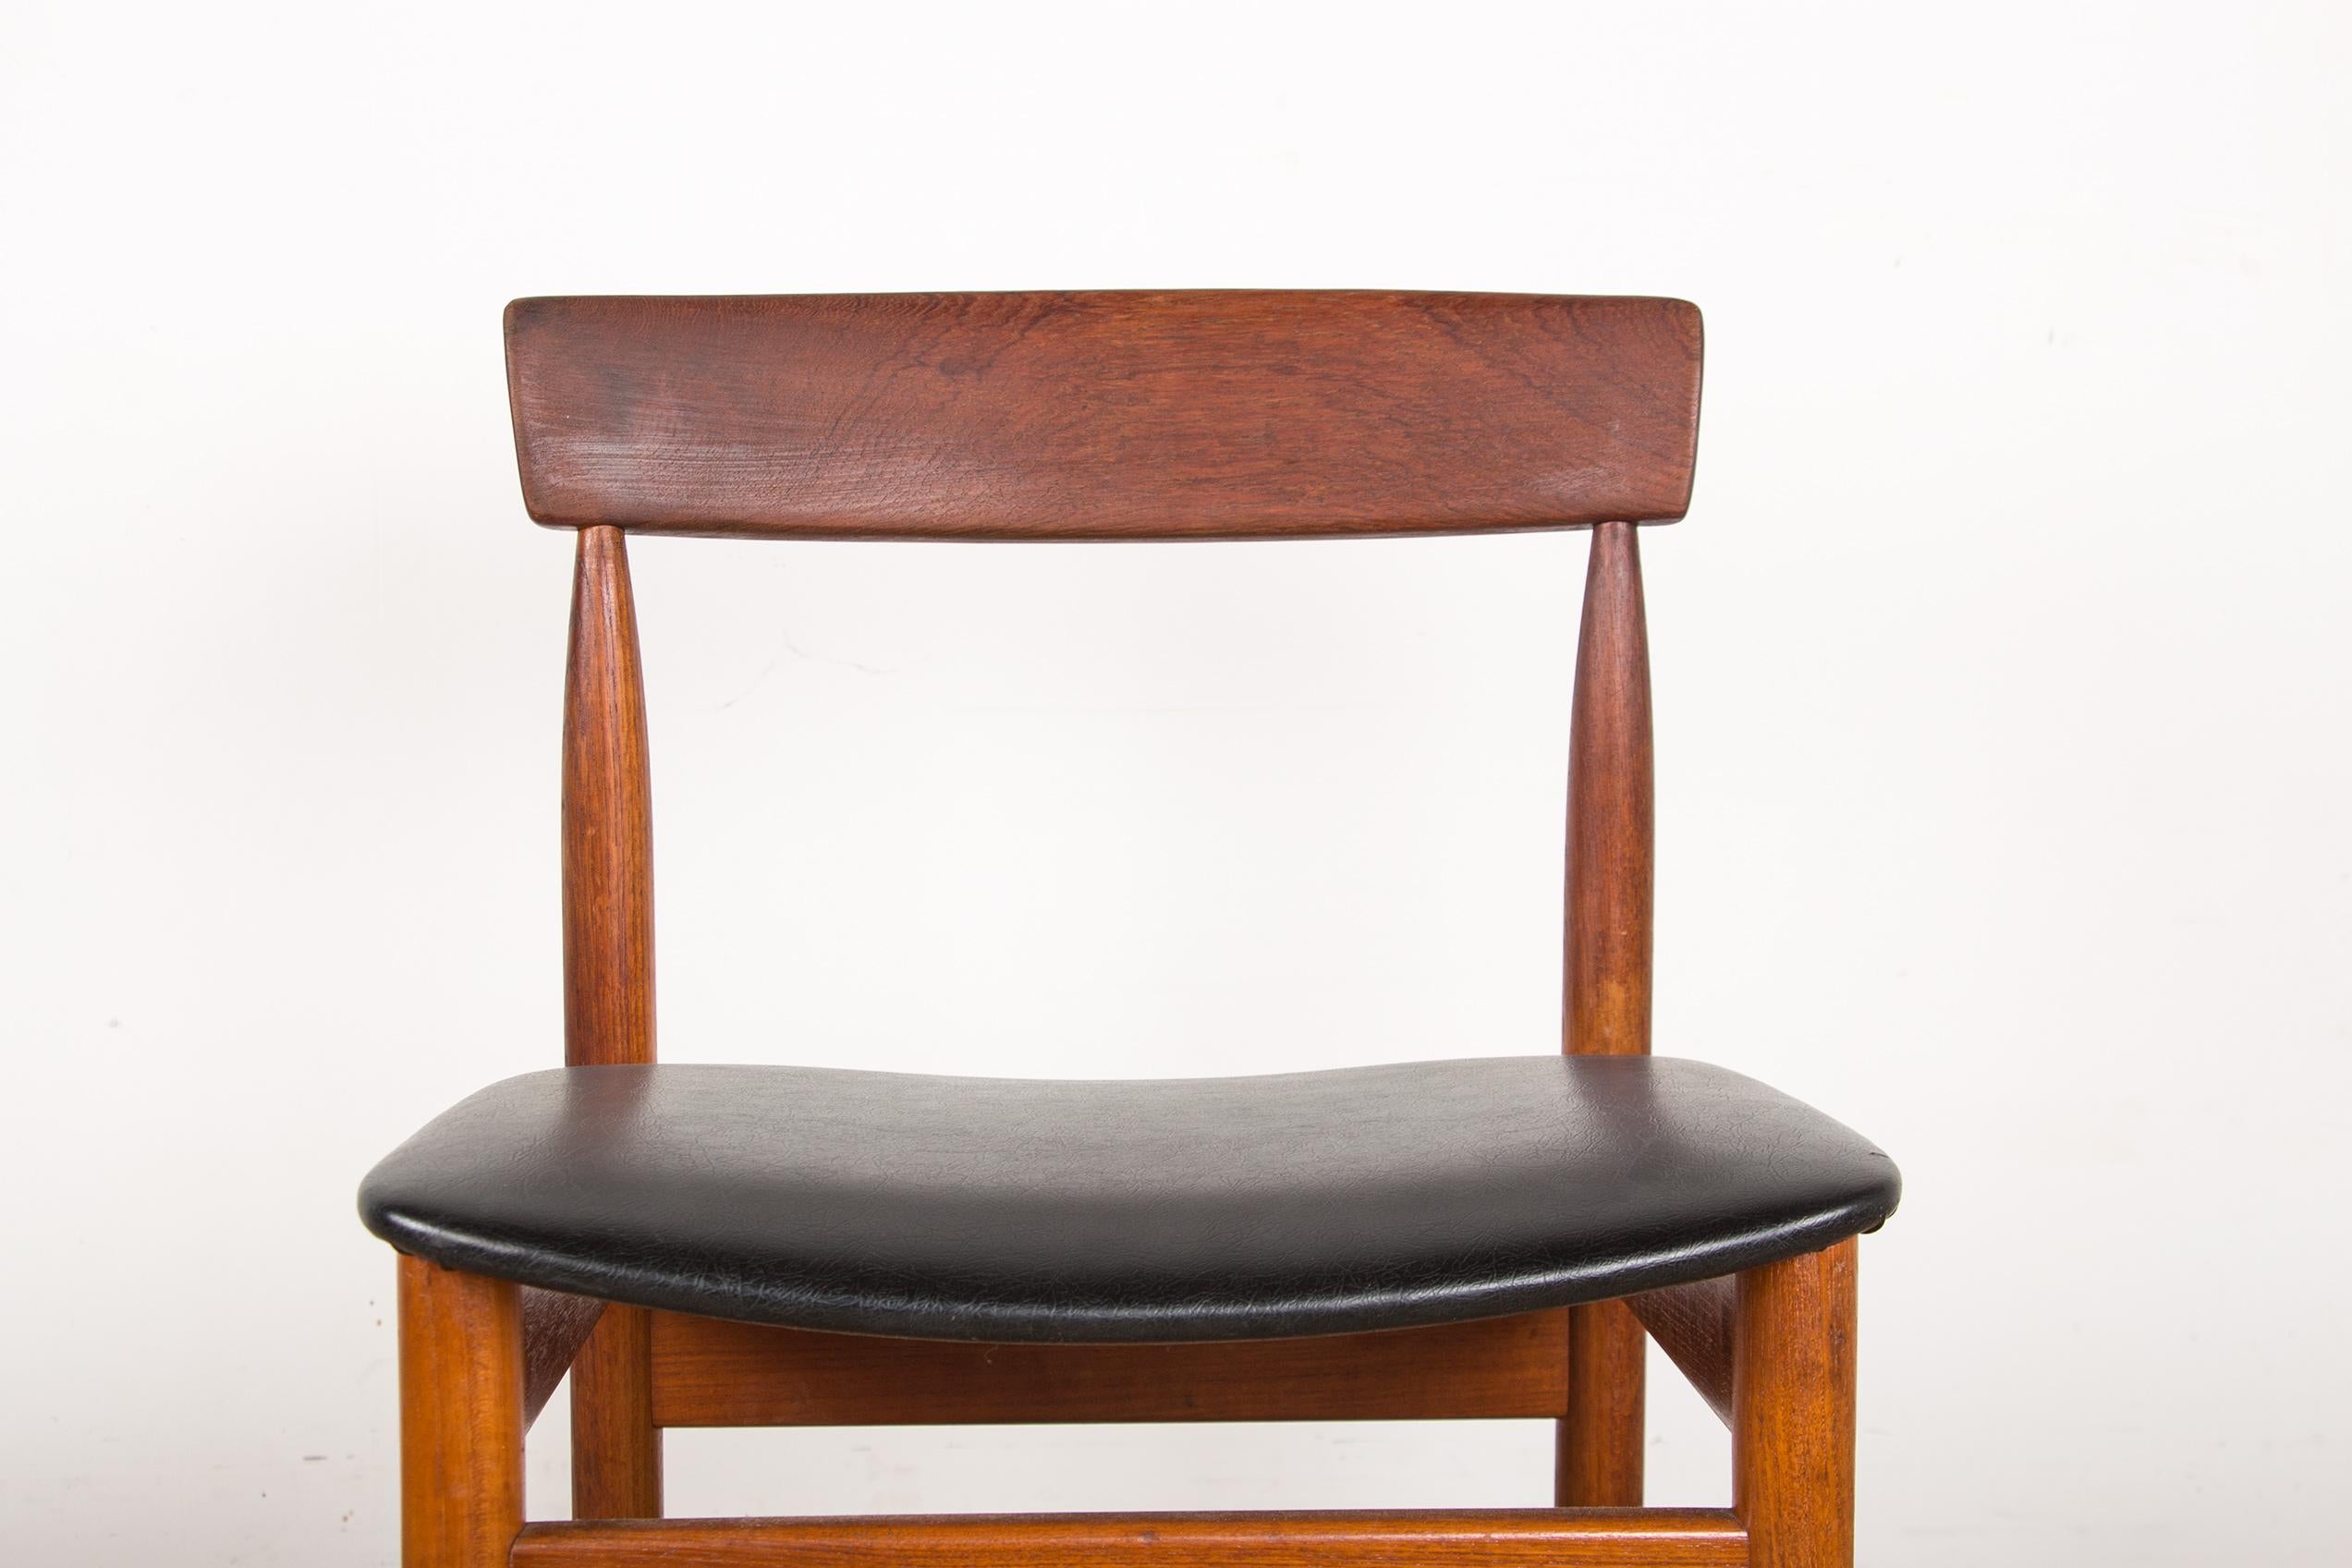 Hübsche Serie von skandinavischen Stühlen. Elegant, robust und sehr bequem. Sauberes Design, sehr schöne Verarbeitung.
